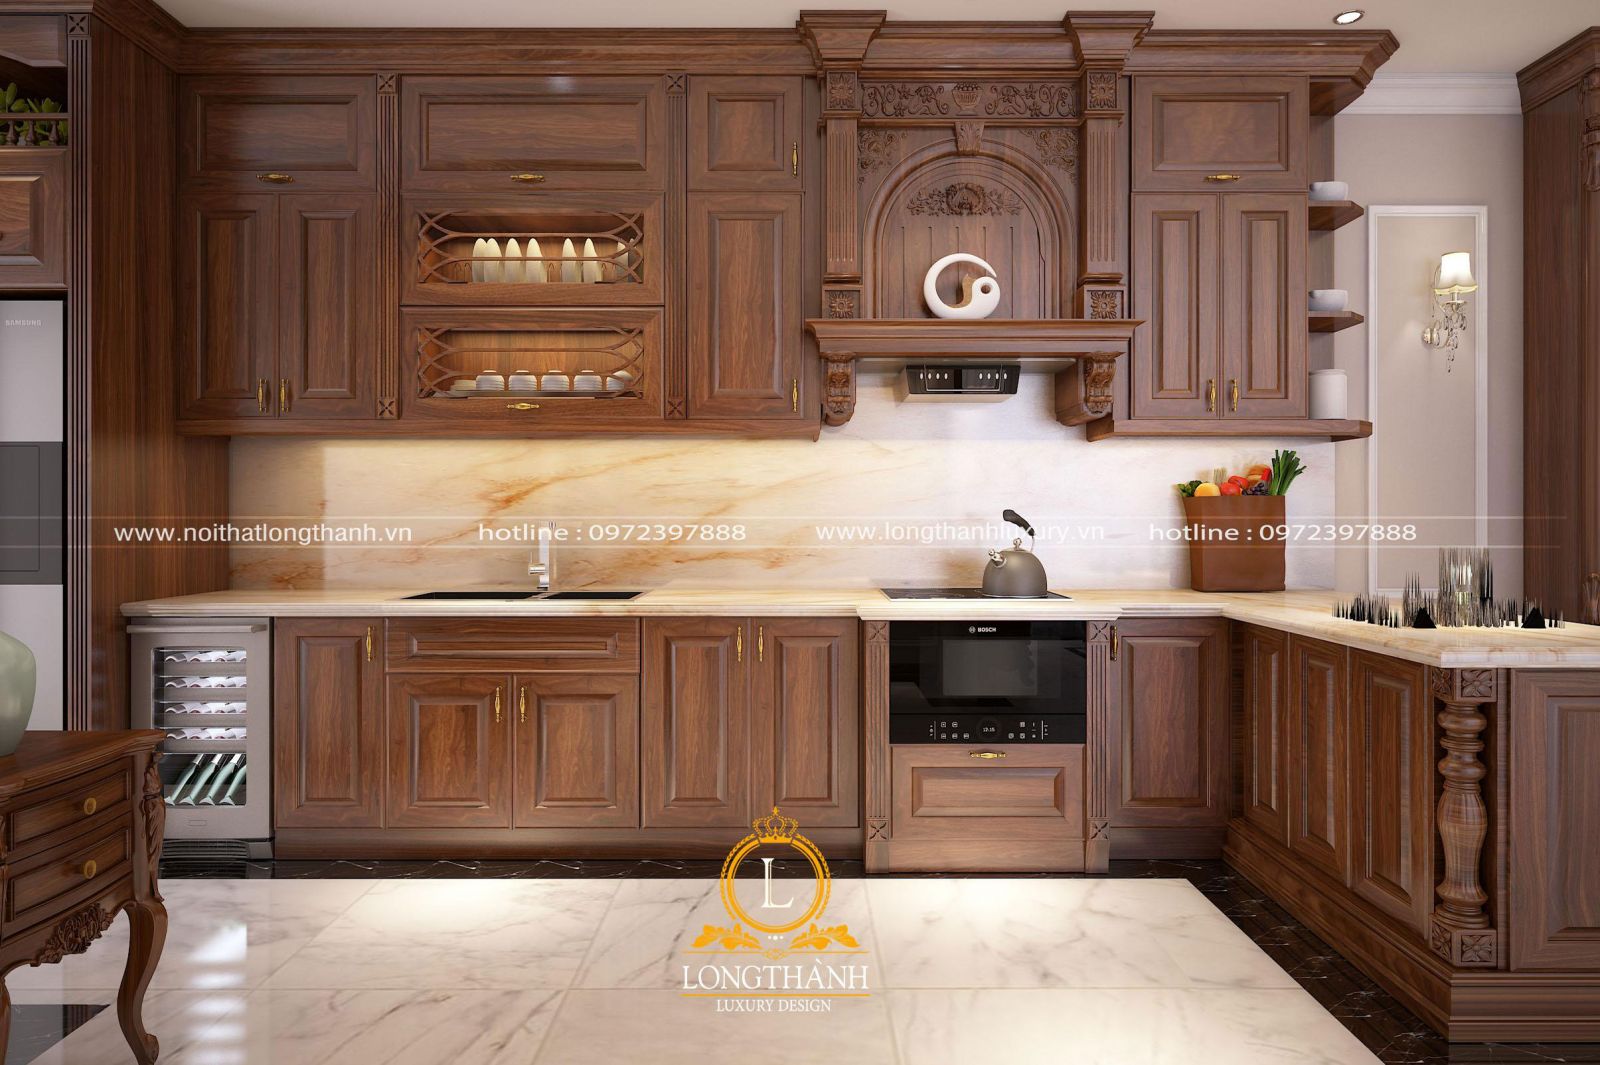 Tủ bếp tân cổ điển được làm từ gỗ tự nhiên cao cấp là thế mạnh của nội thất Long Thành